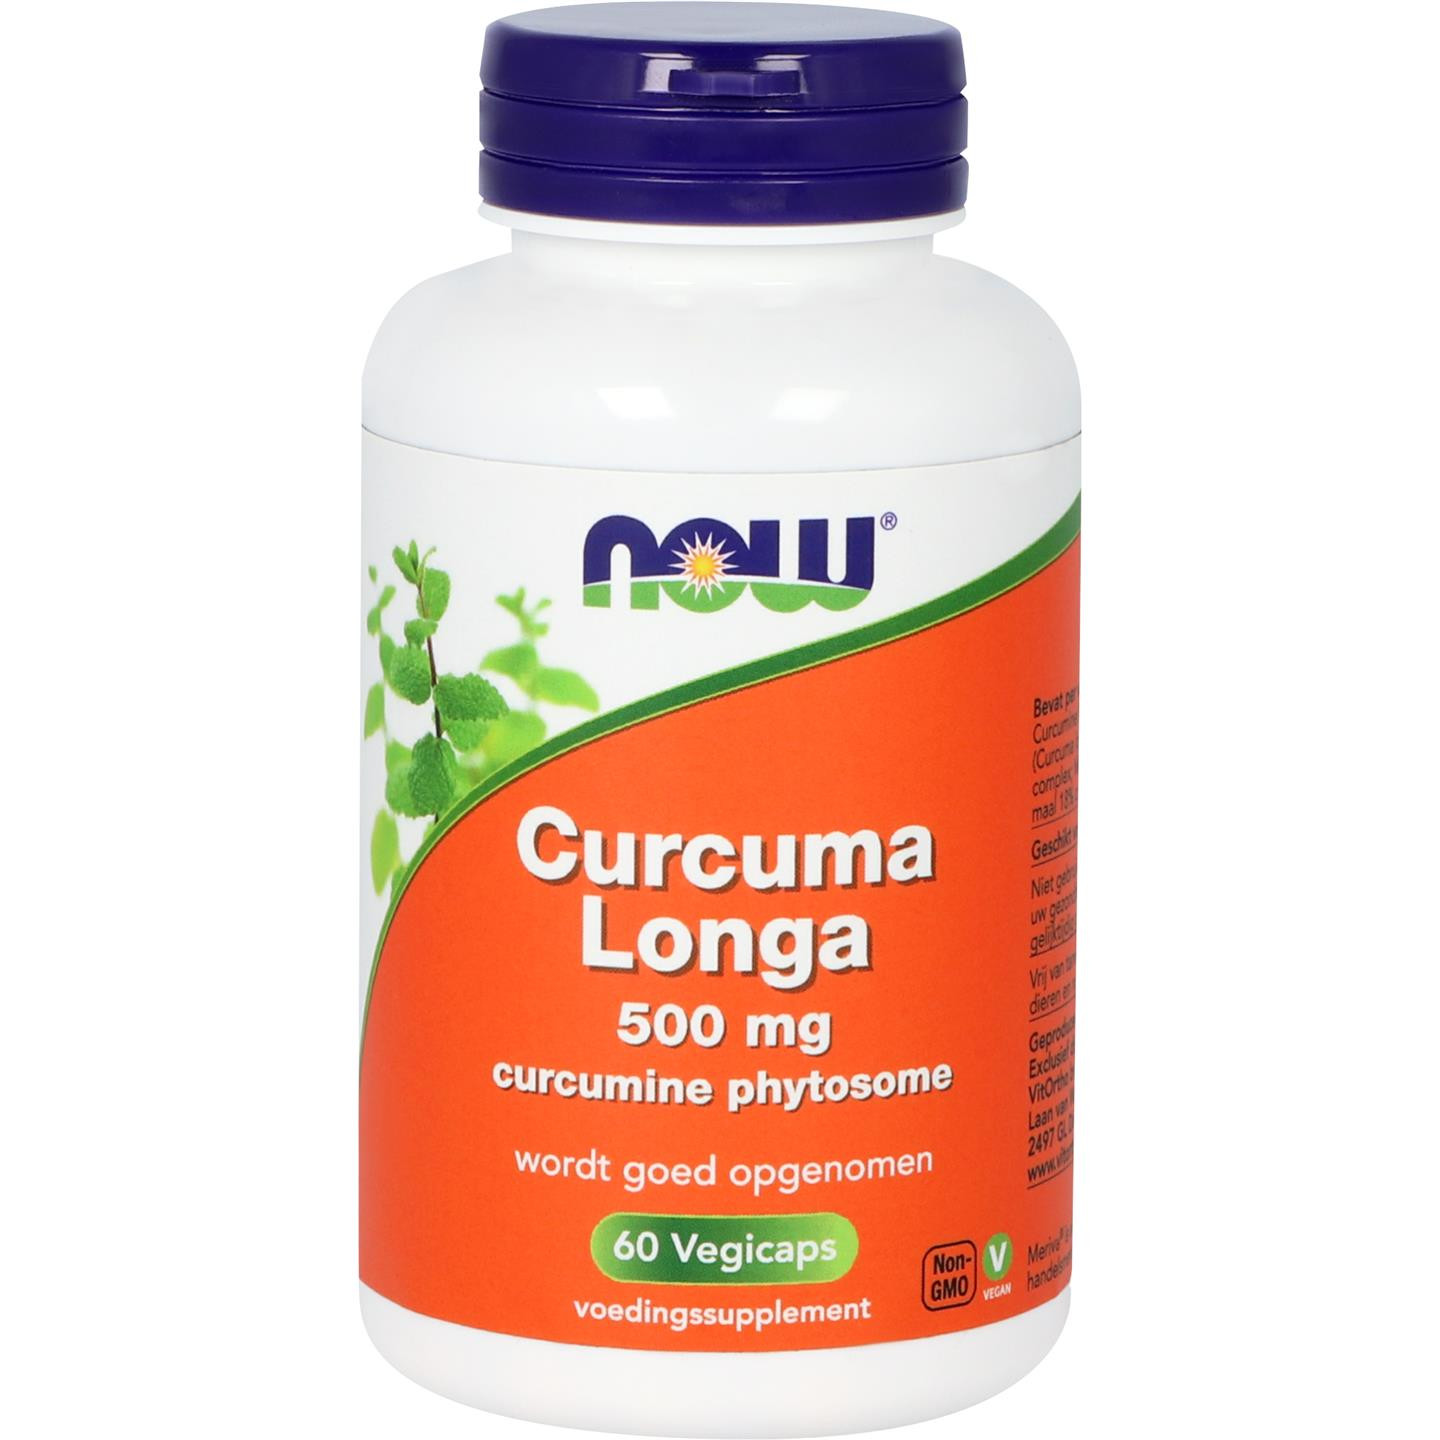 Curcuma longa 500 mg